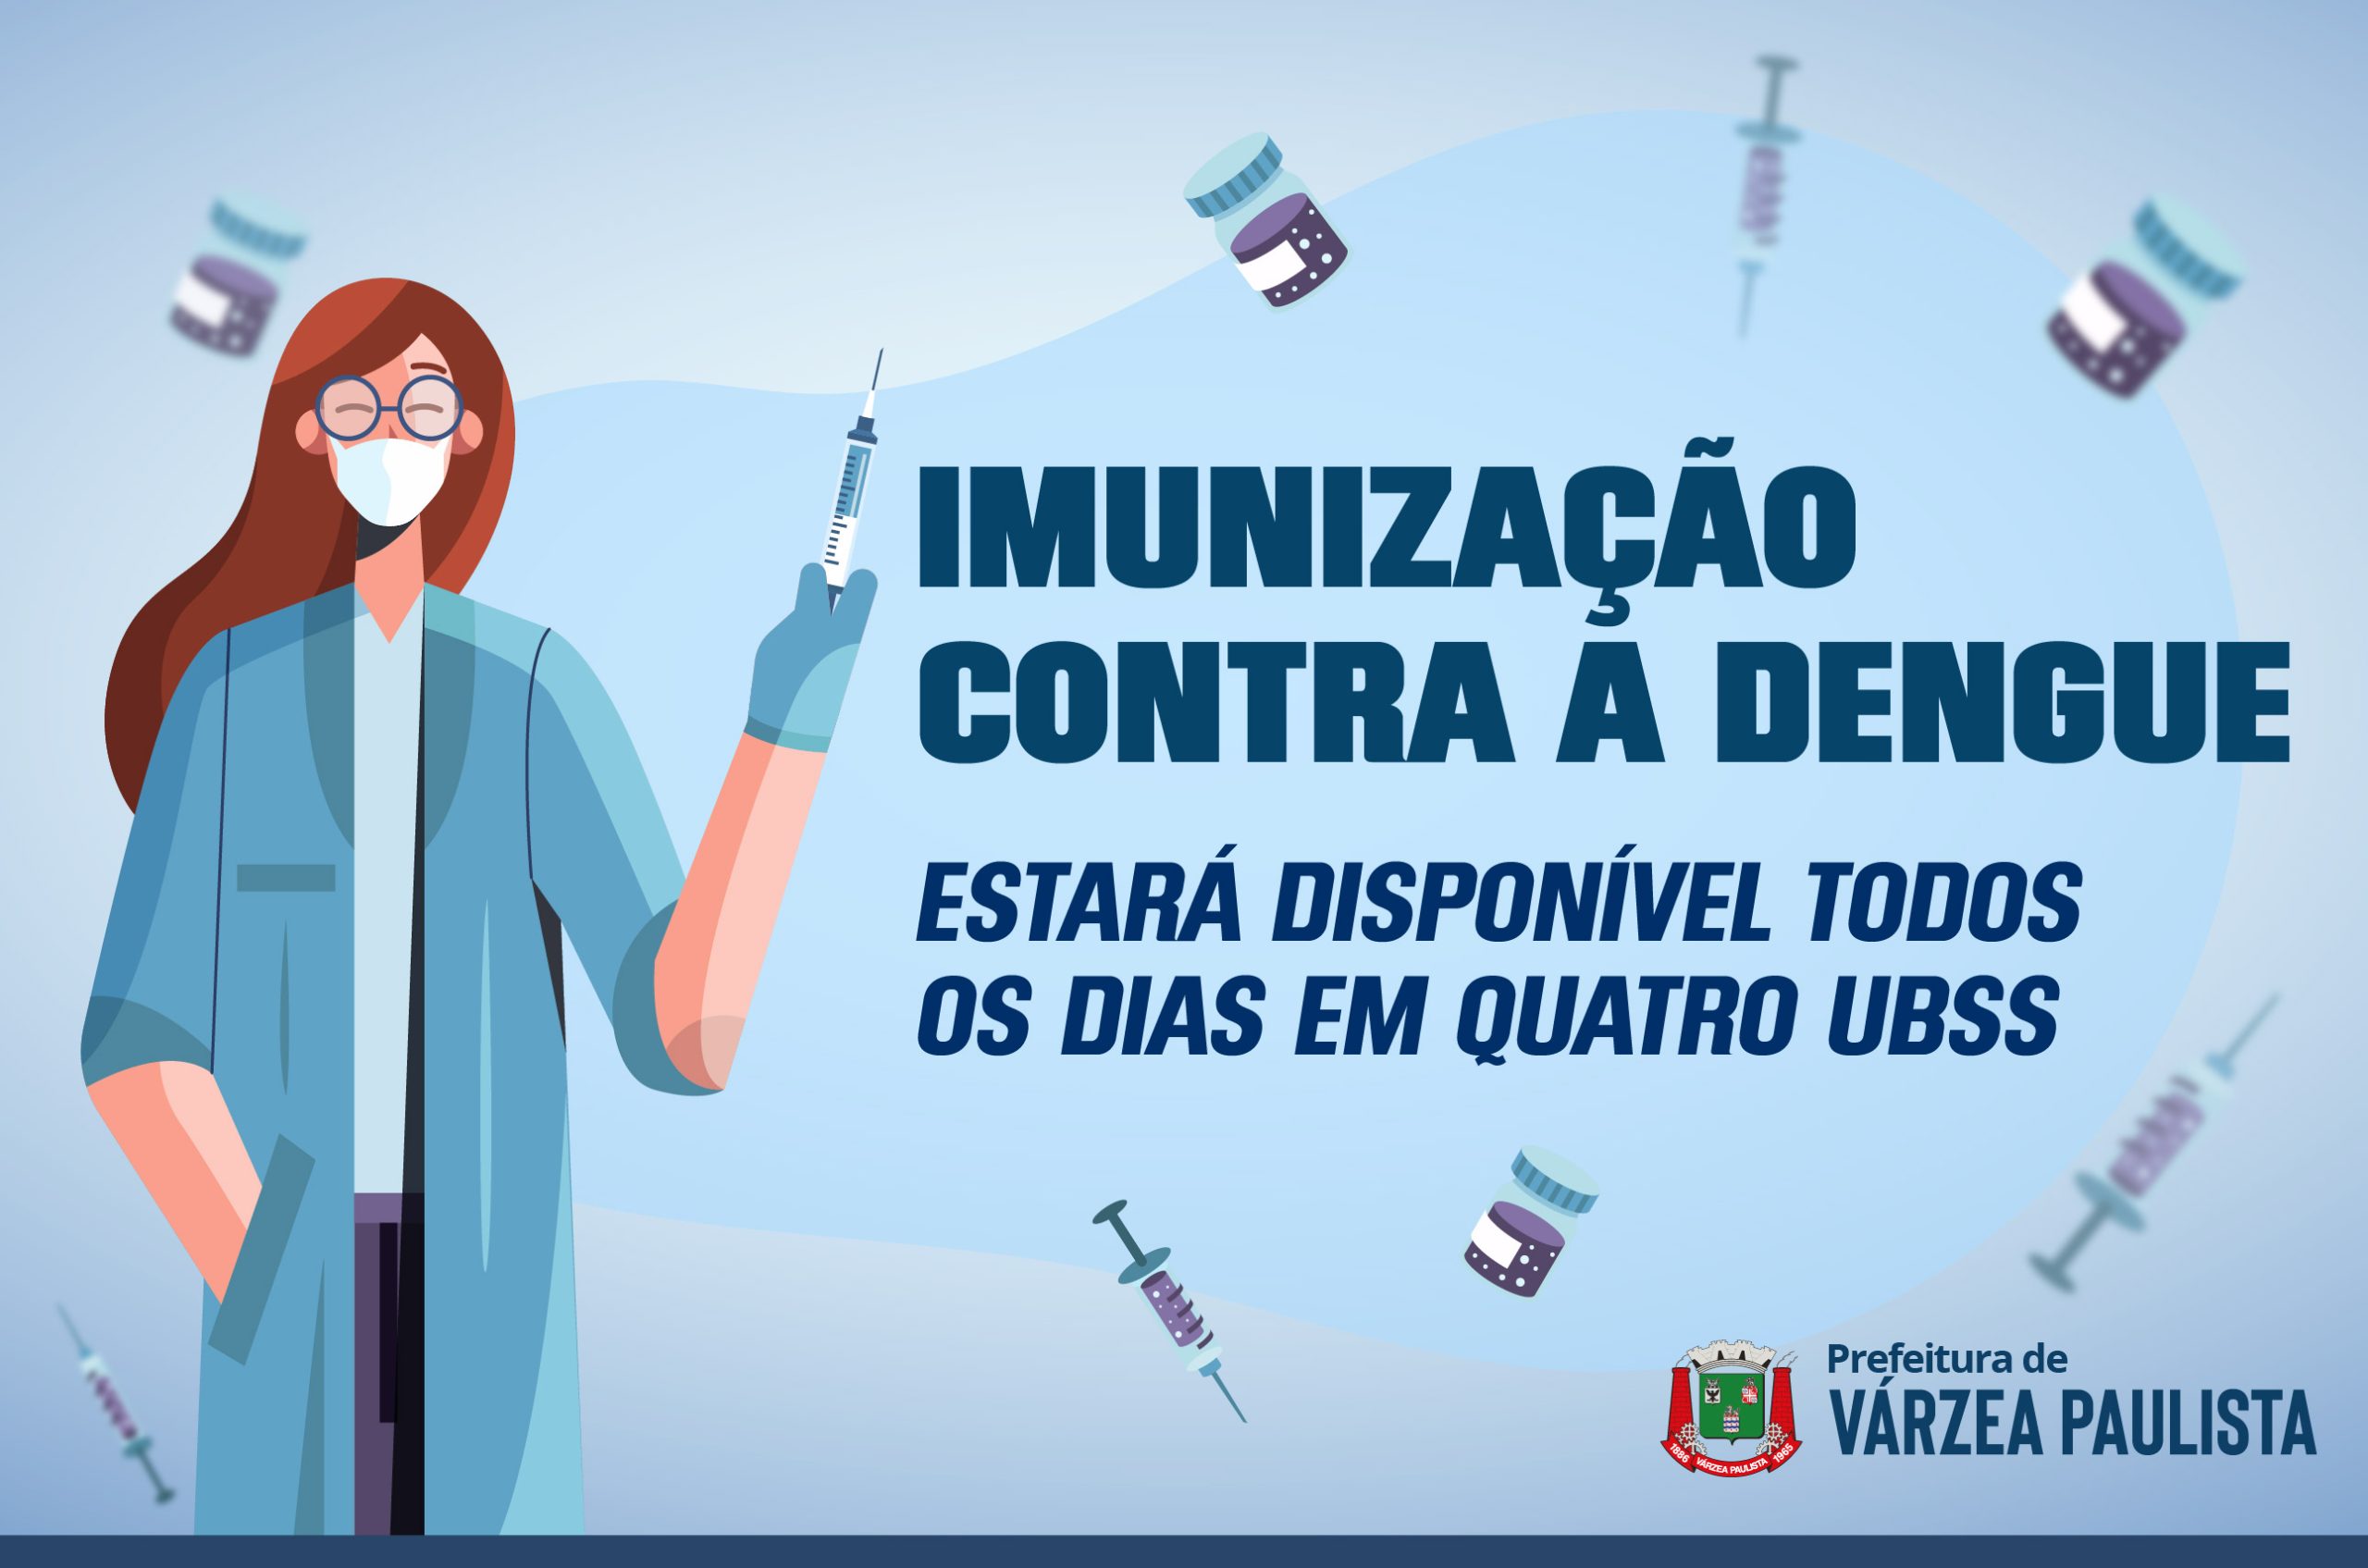 Imunização contra a dengue estará disponível todos os dias em quatro UBSs